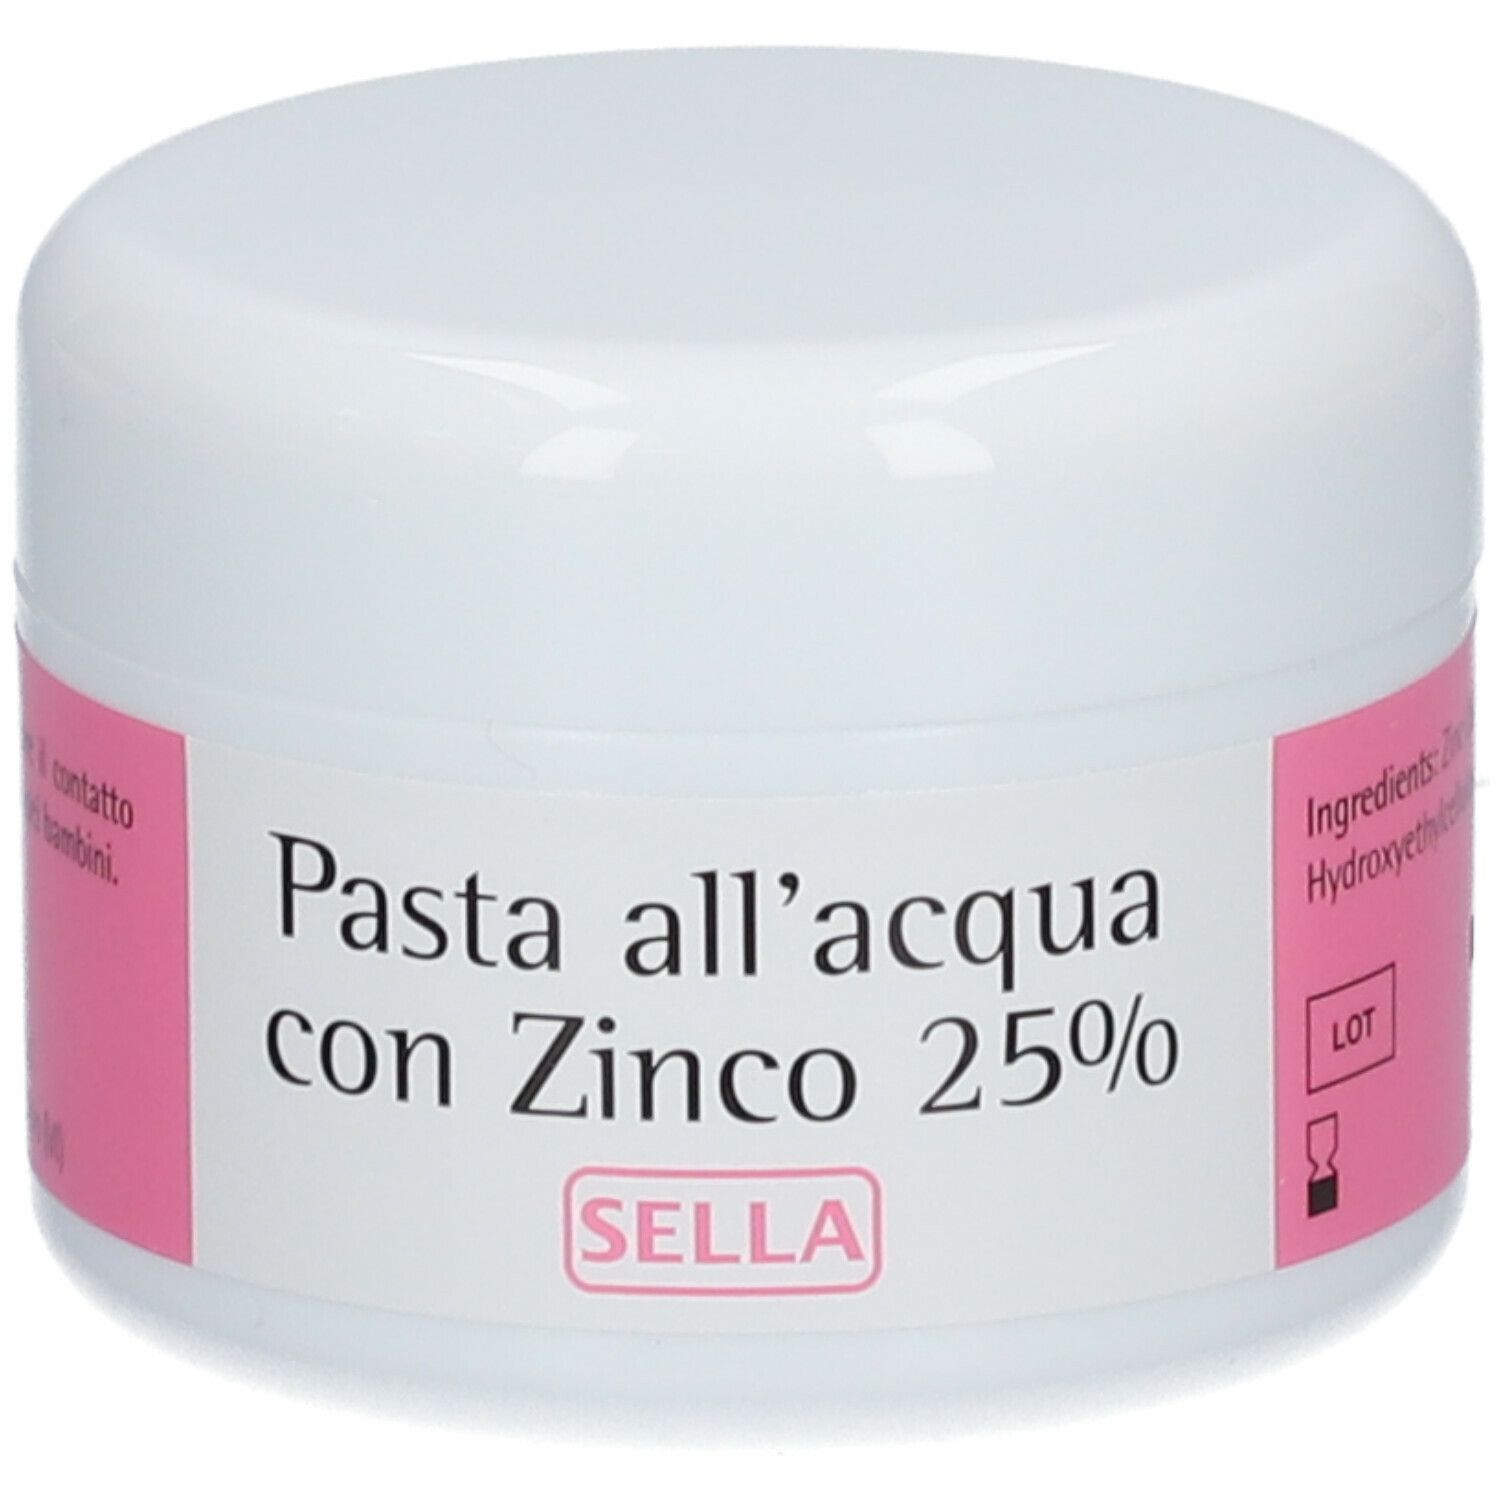 SELLA Pasta all'acqua con Zinco 25% 100 g